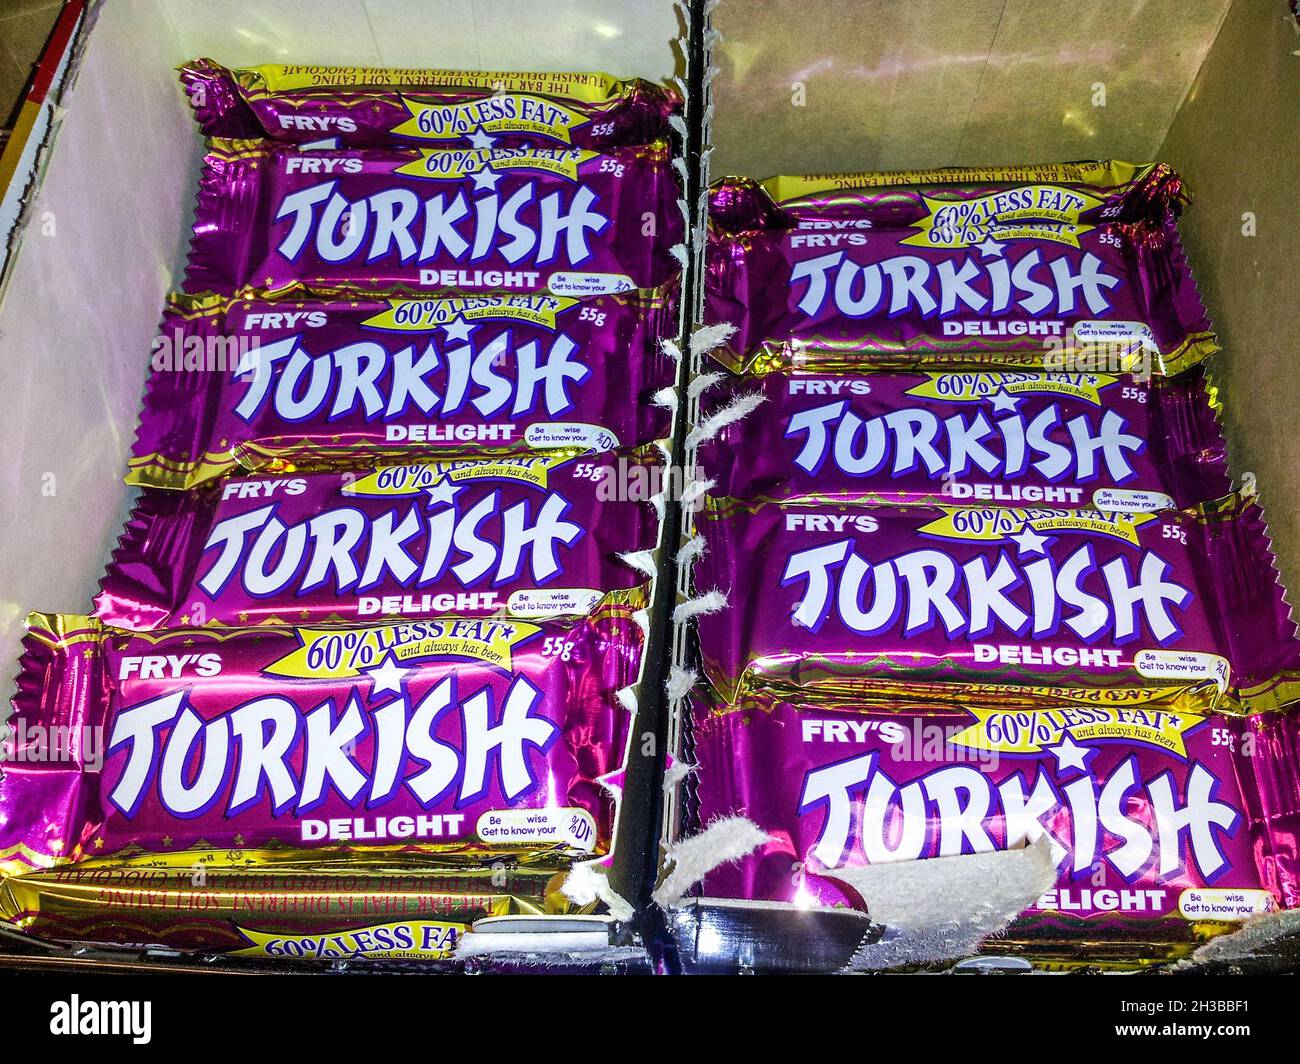 03-24-2013 Brisbane Australien - zwei Schachteln mit kommerziell verpacktem türkischem Vergnügen, die auf einem Einzelhandelsregal sitzen. Stockfoto